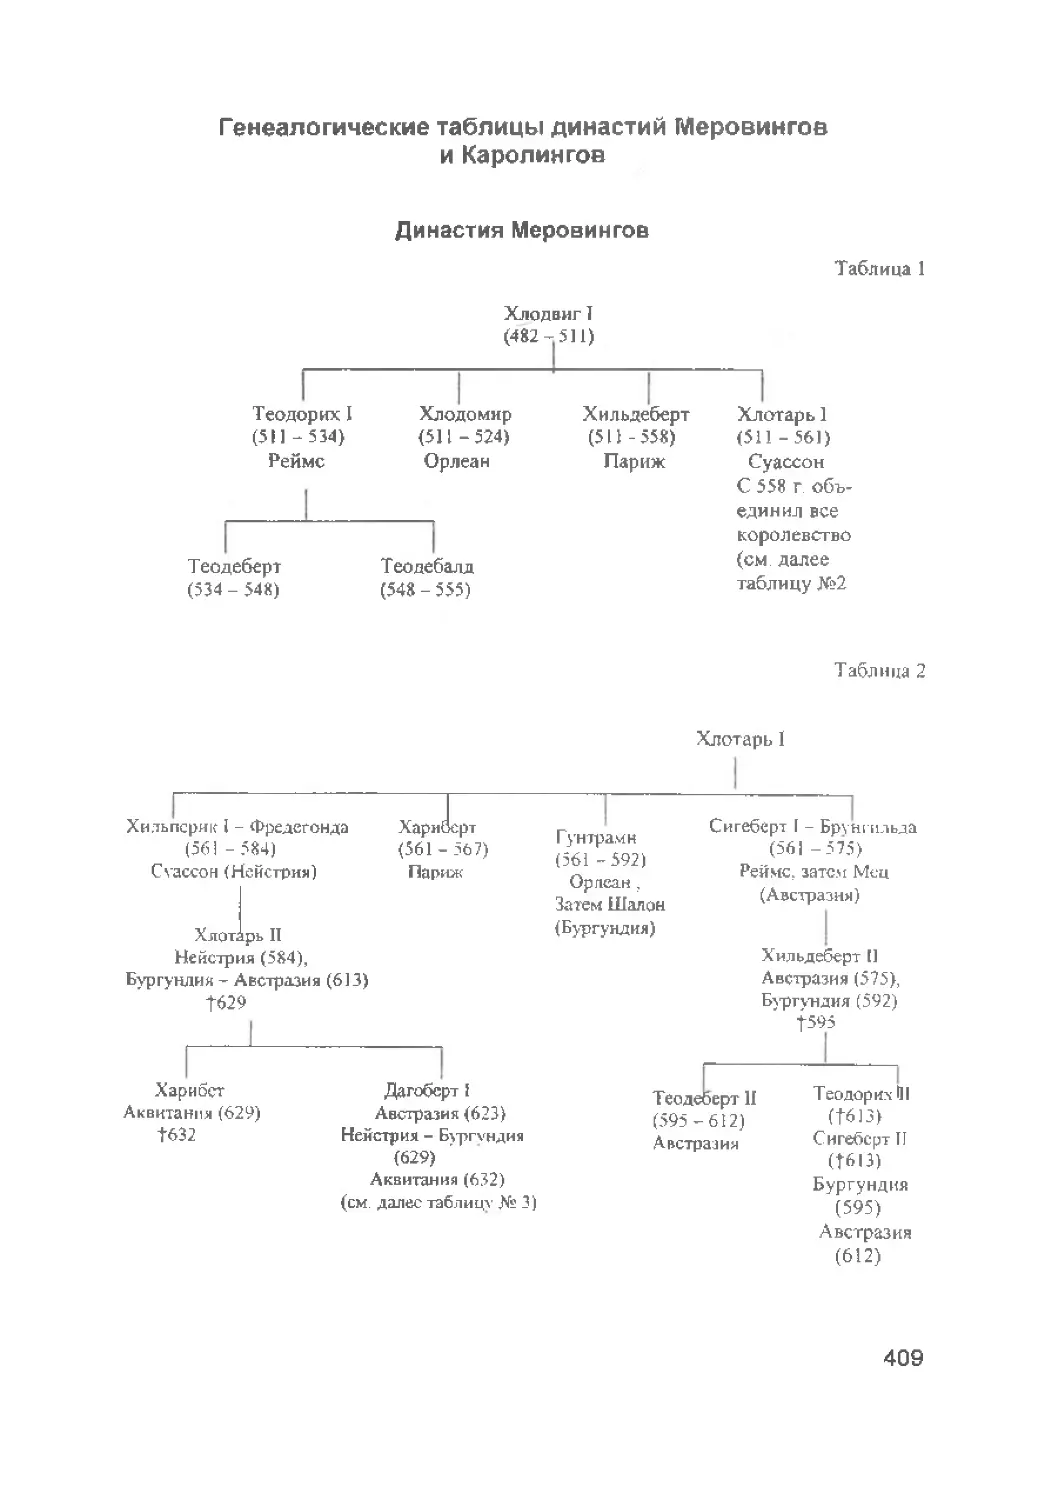 ﻿Генеалогические таблицы династий Меровингов и Каролинго